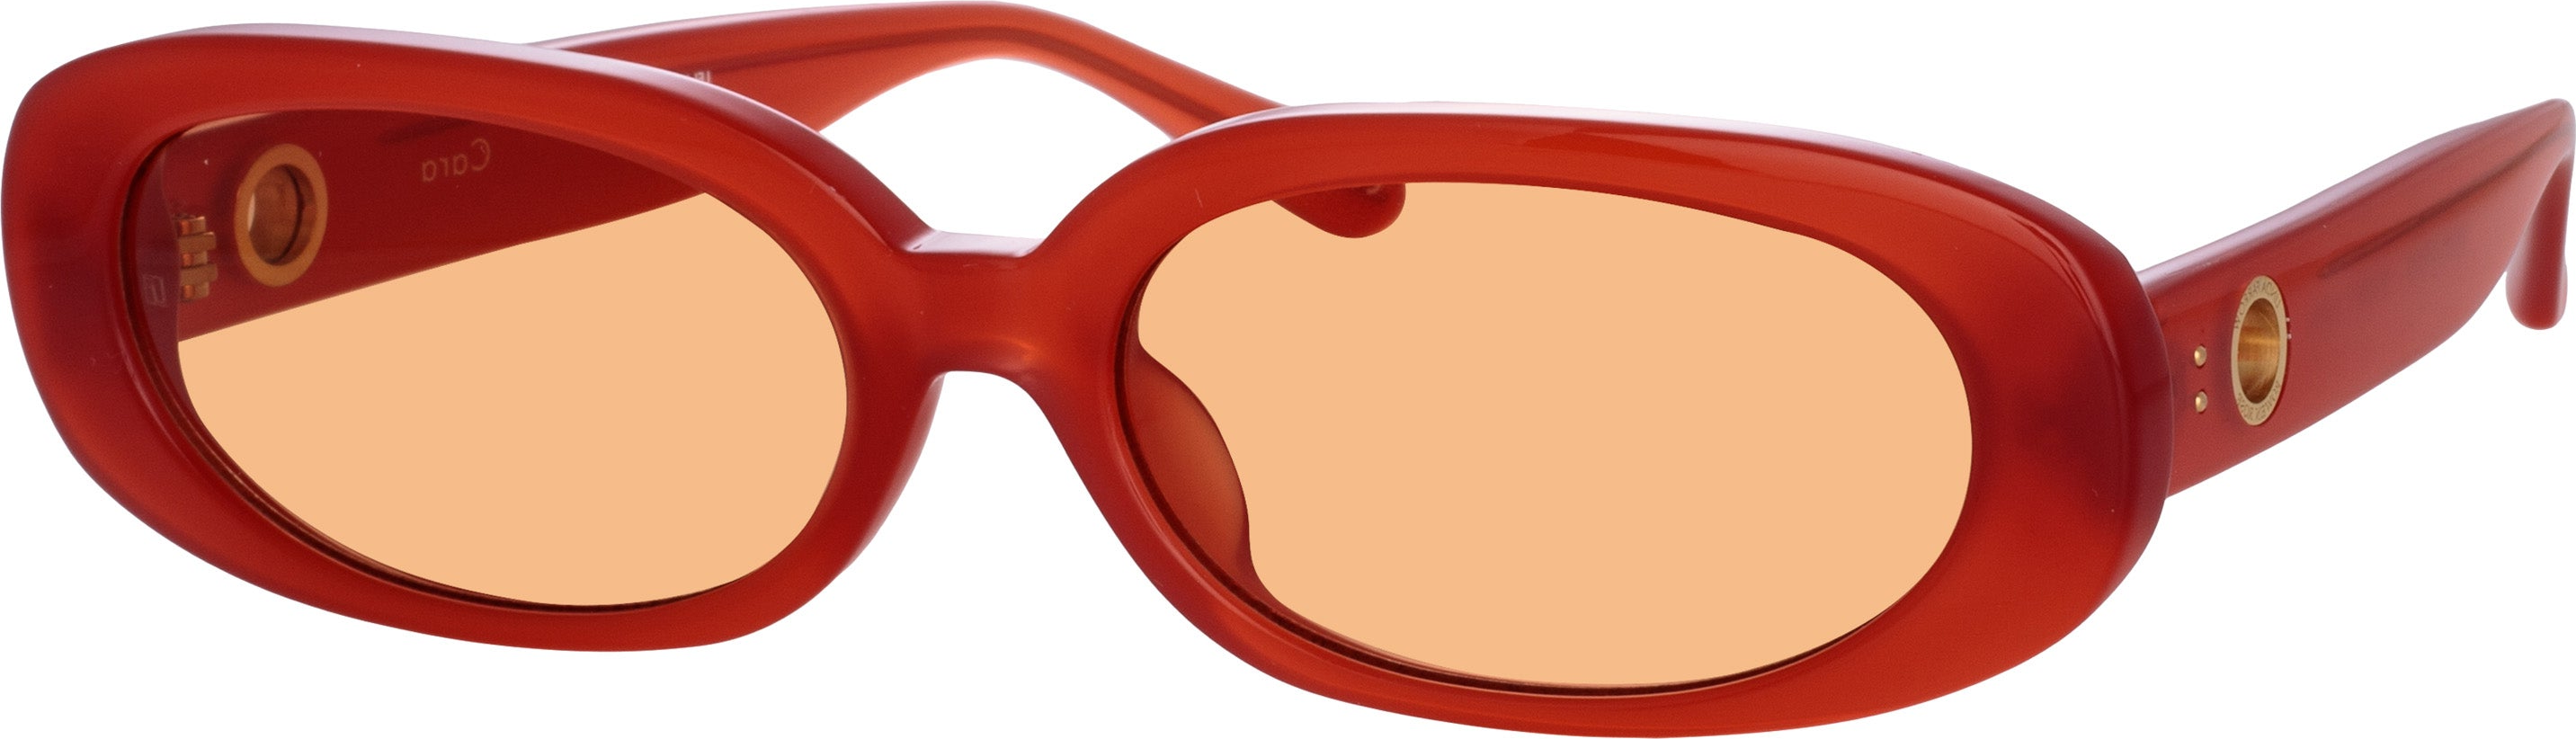 Color_LFL1252C13SUN - Cara Oval Sunglasses in Terracotta